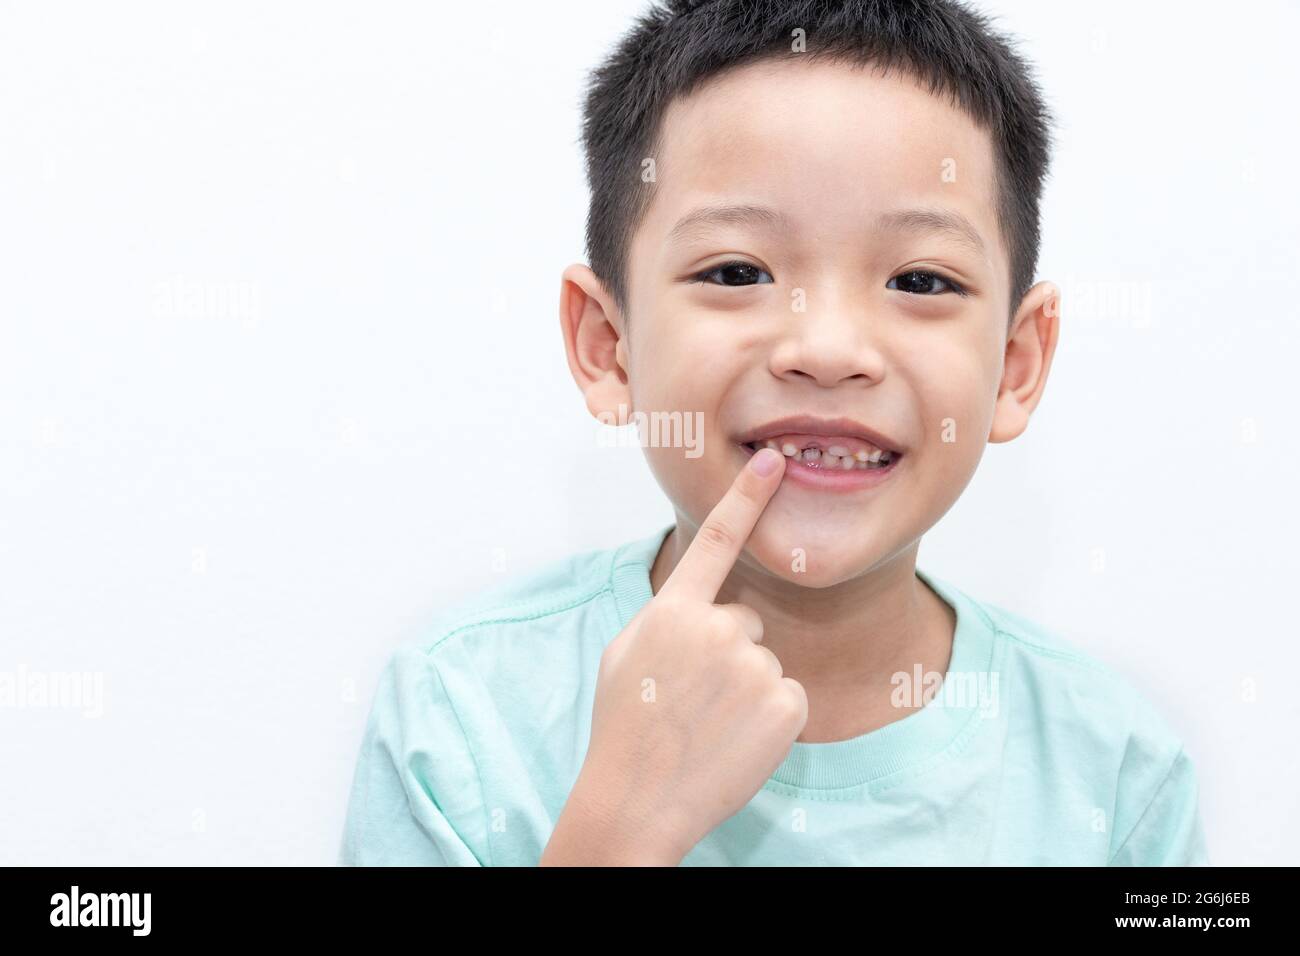 Le petit garçon asiatique pointait vers ses dents permanentes est en pleine croissance. Un garçon de 5 ans dont l'incisive supérieure de la dent de lait est tombée. Spectacle de bouche ouverte pour enfants heureux Banque D'Images